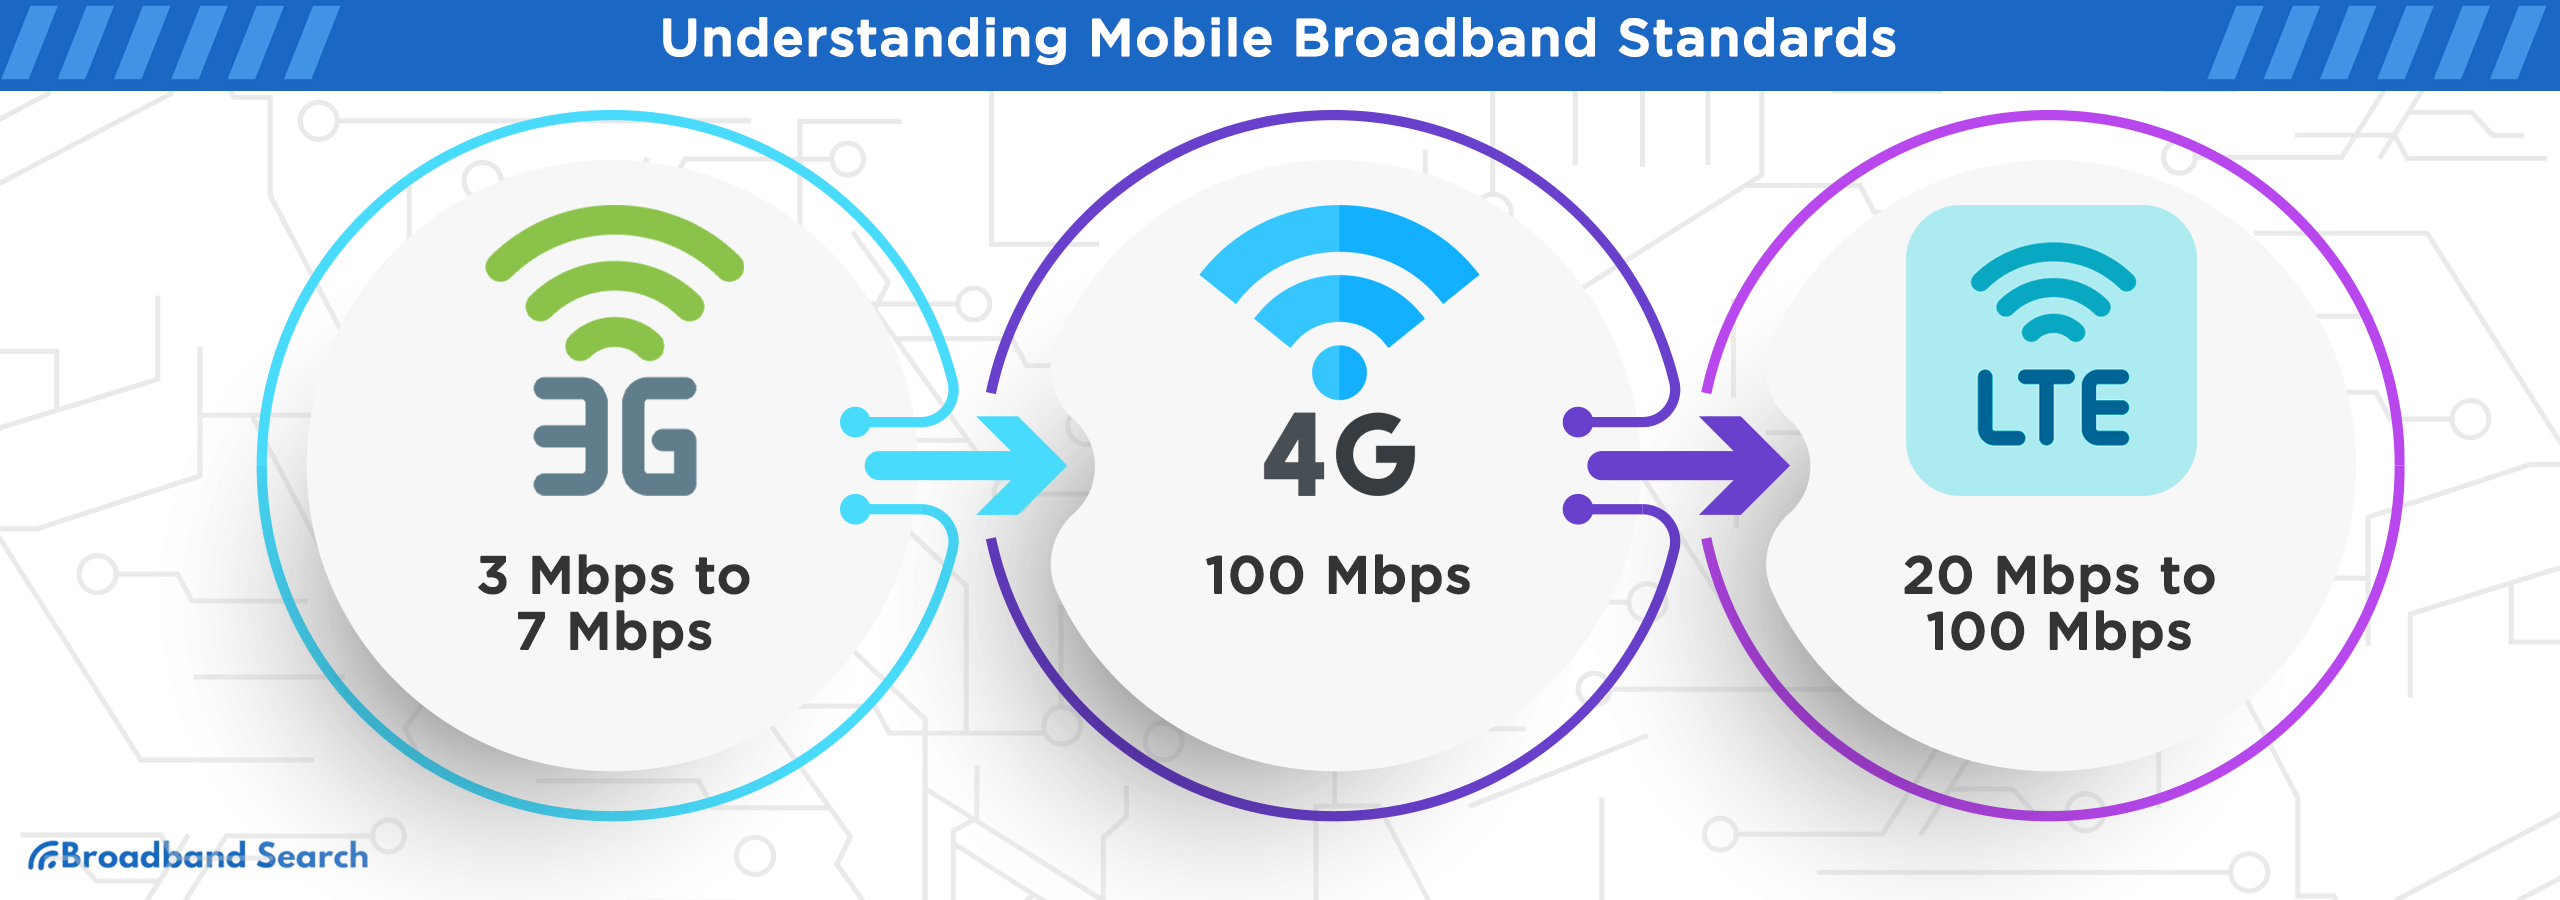 Understanding mobile broadband standards